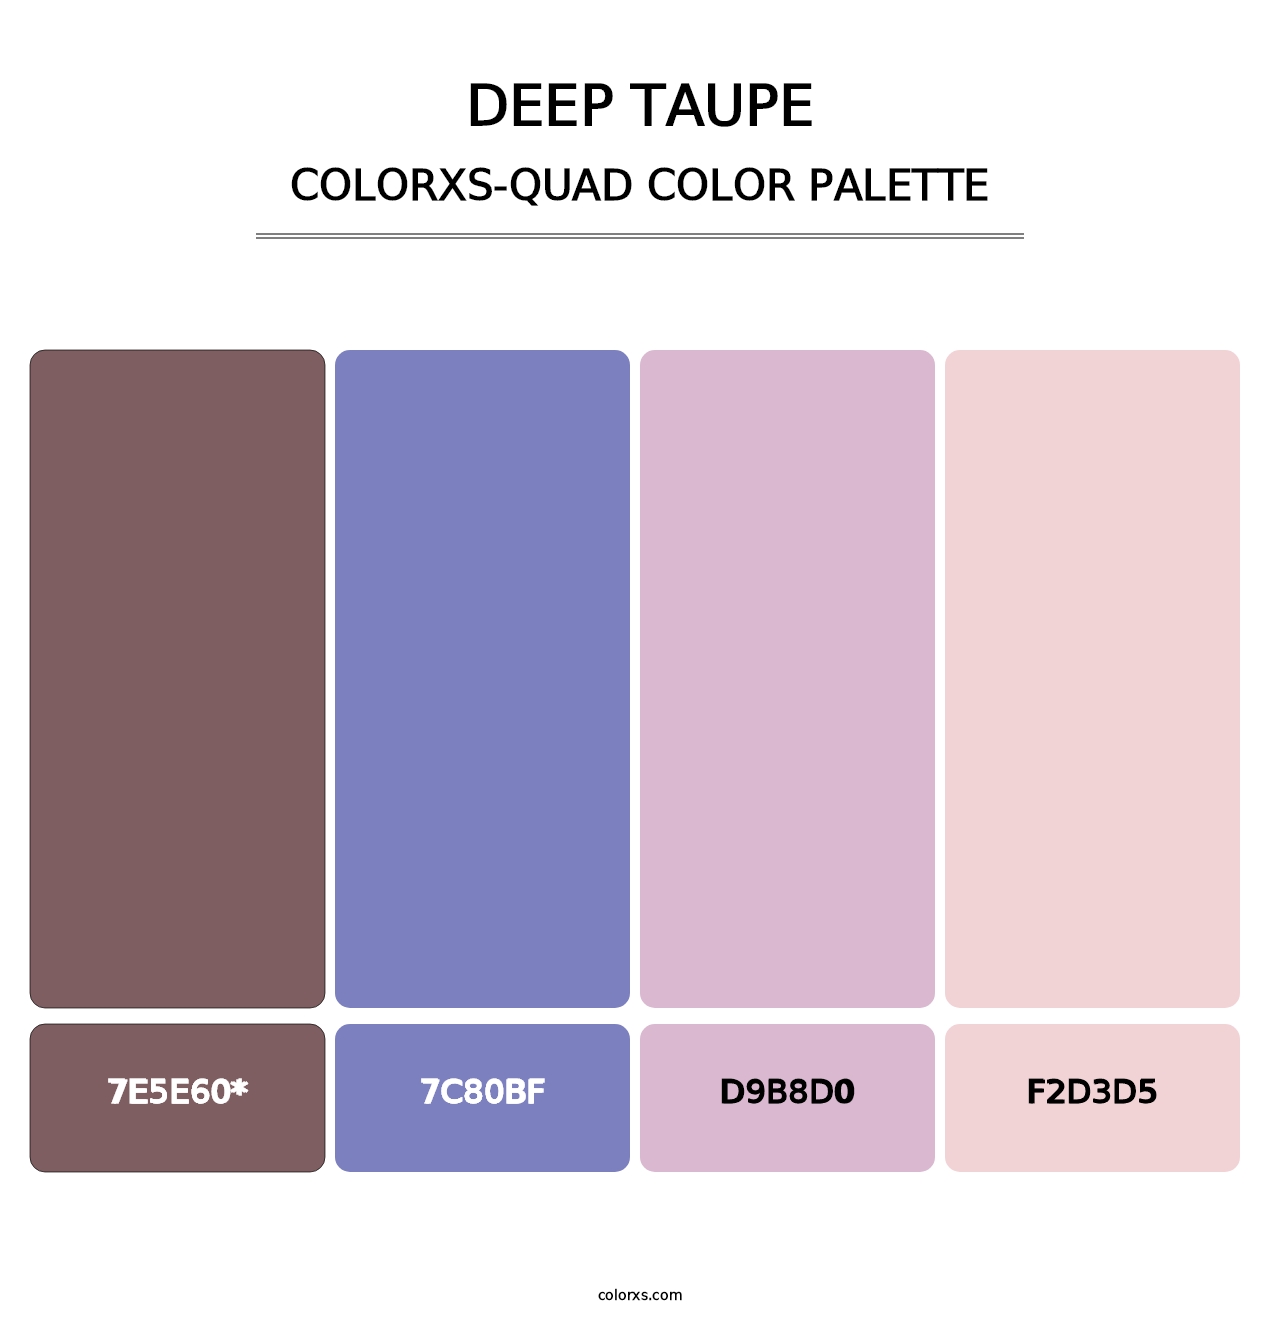 Deep Taupe - Colorxs Quad Palette